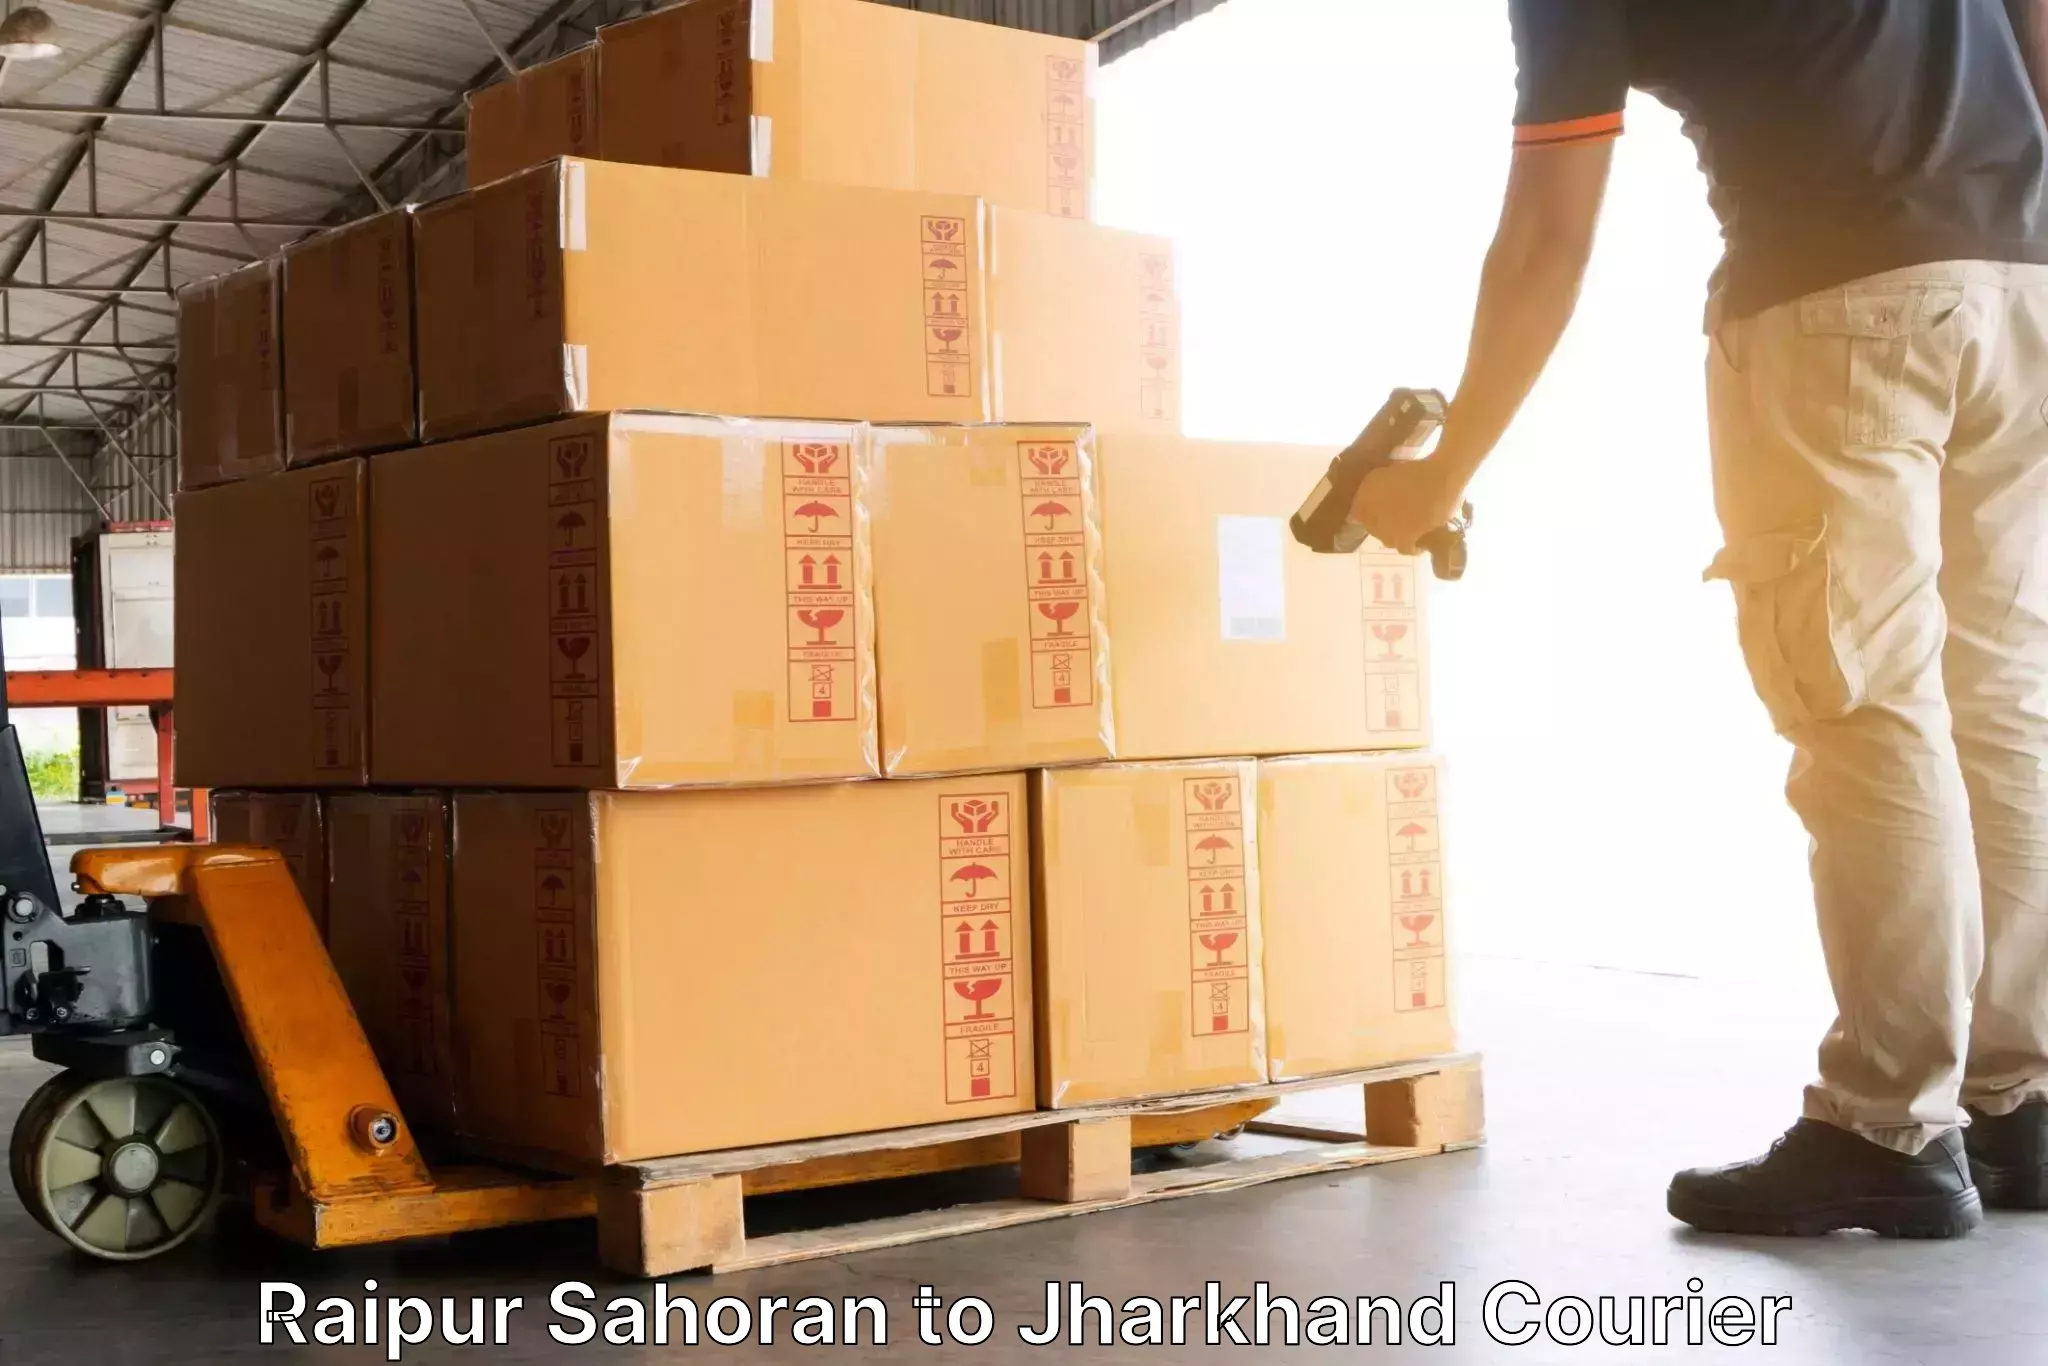 Professional parcel services Raipur Sahoran to Daltonganj